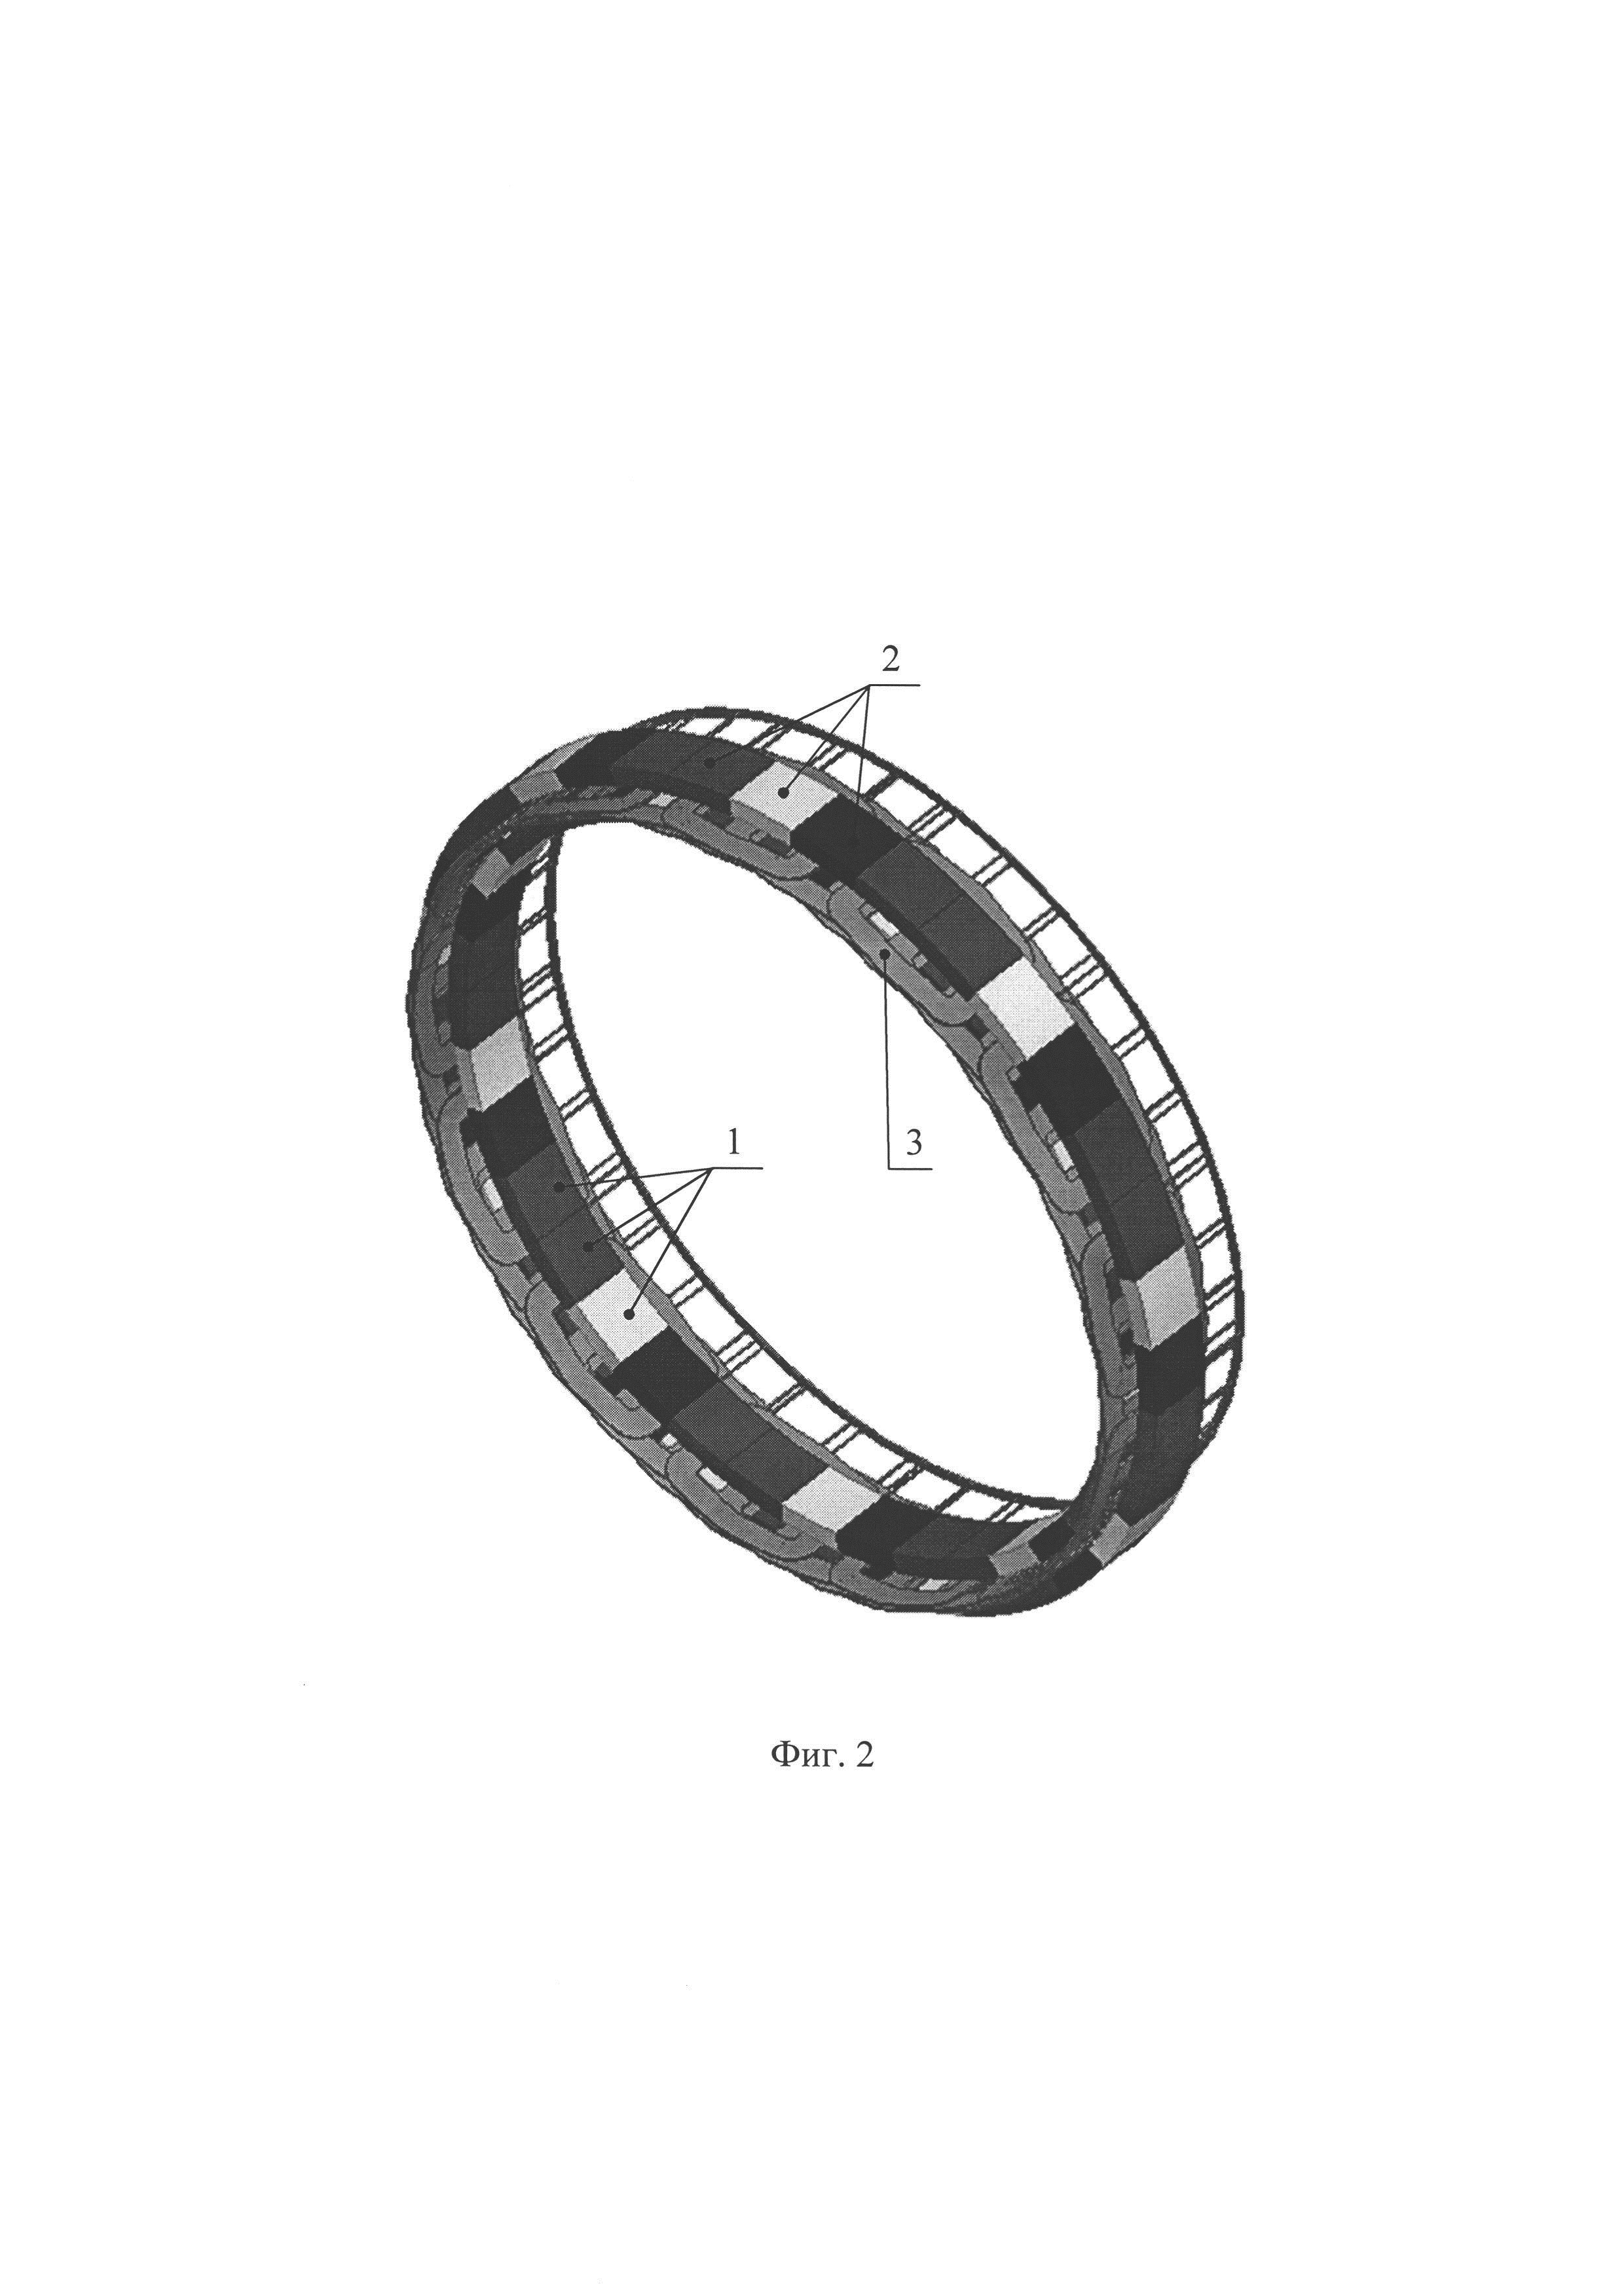 Способ намагничивания и сборки кольца Хальбаха ротора электромашины (варианты)